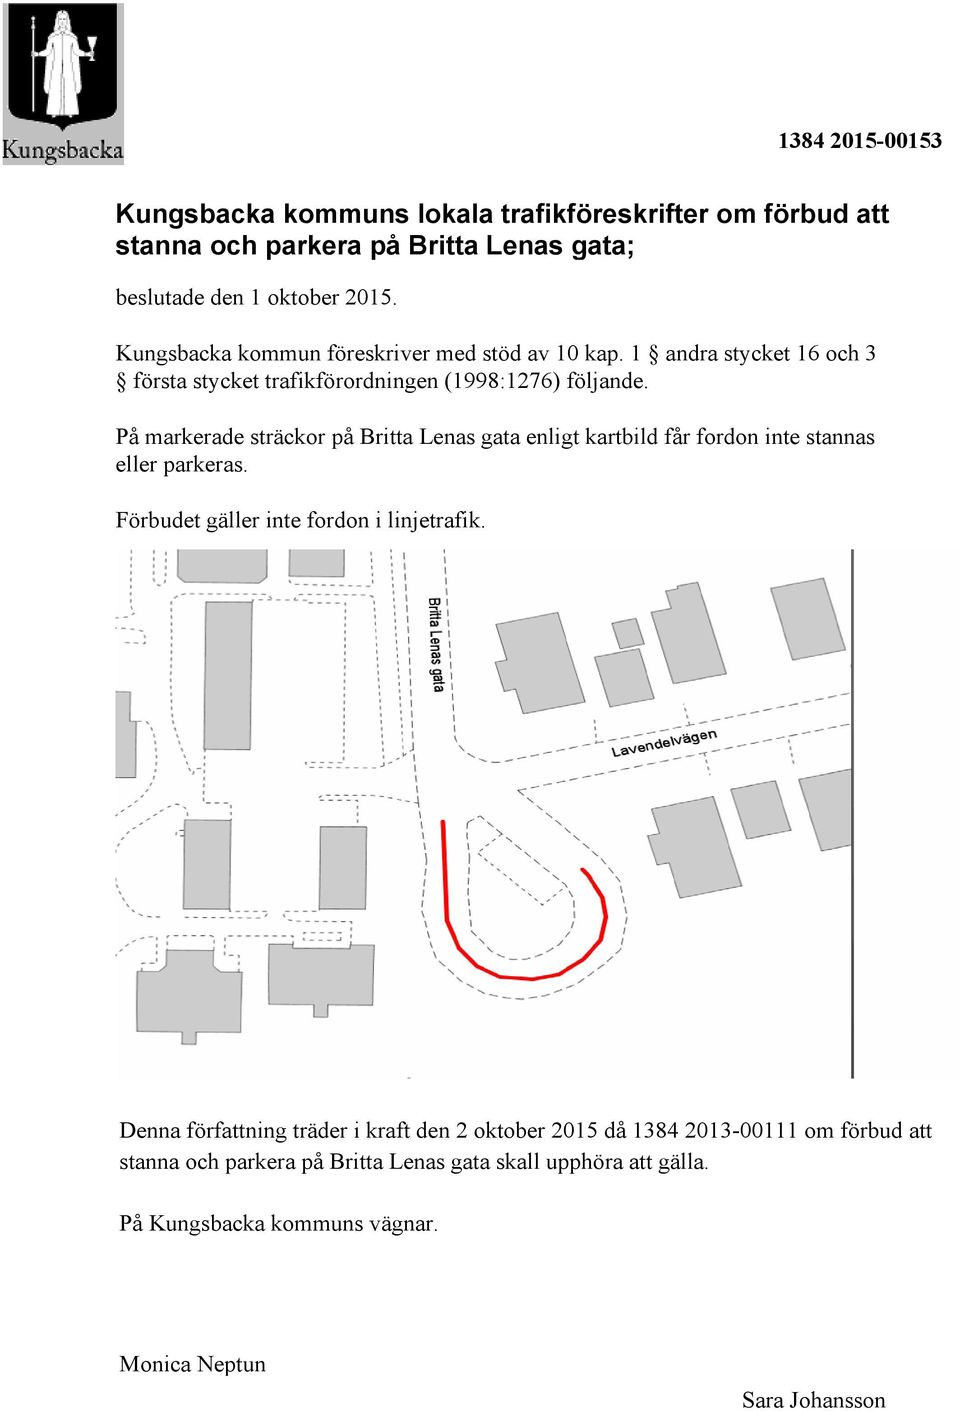 På markerade sträckor på Britta Lenas gata enligt kartbild får fordon inte stannas eller parkeras. Förbudet gäller inte fordon i linjetrafik.